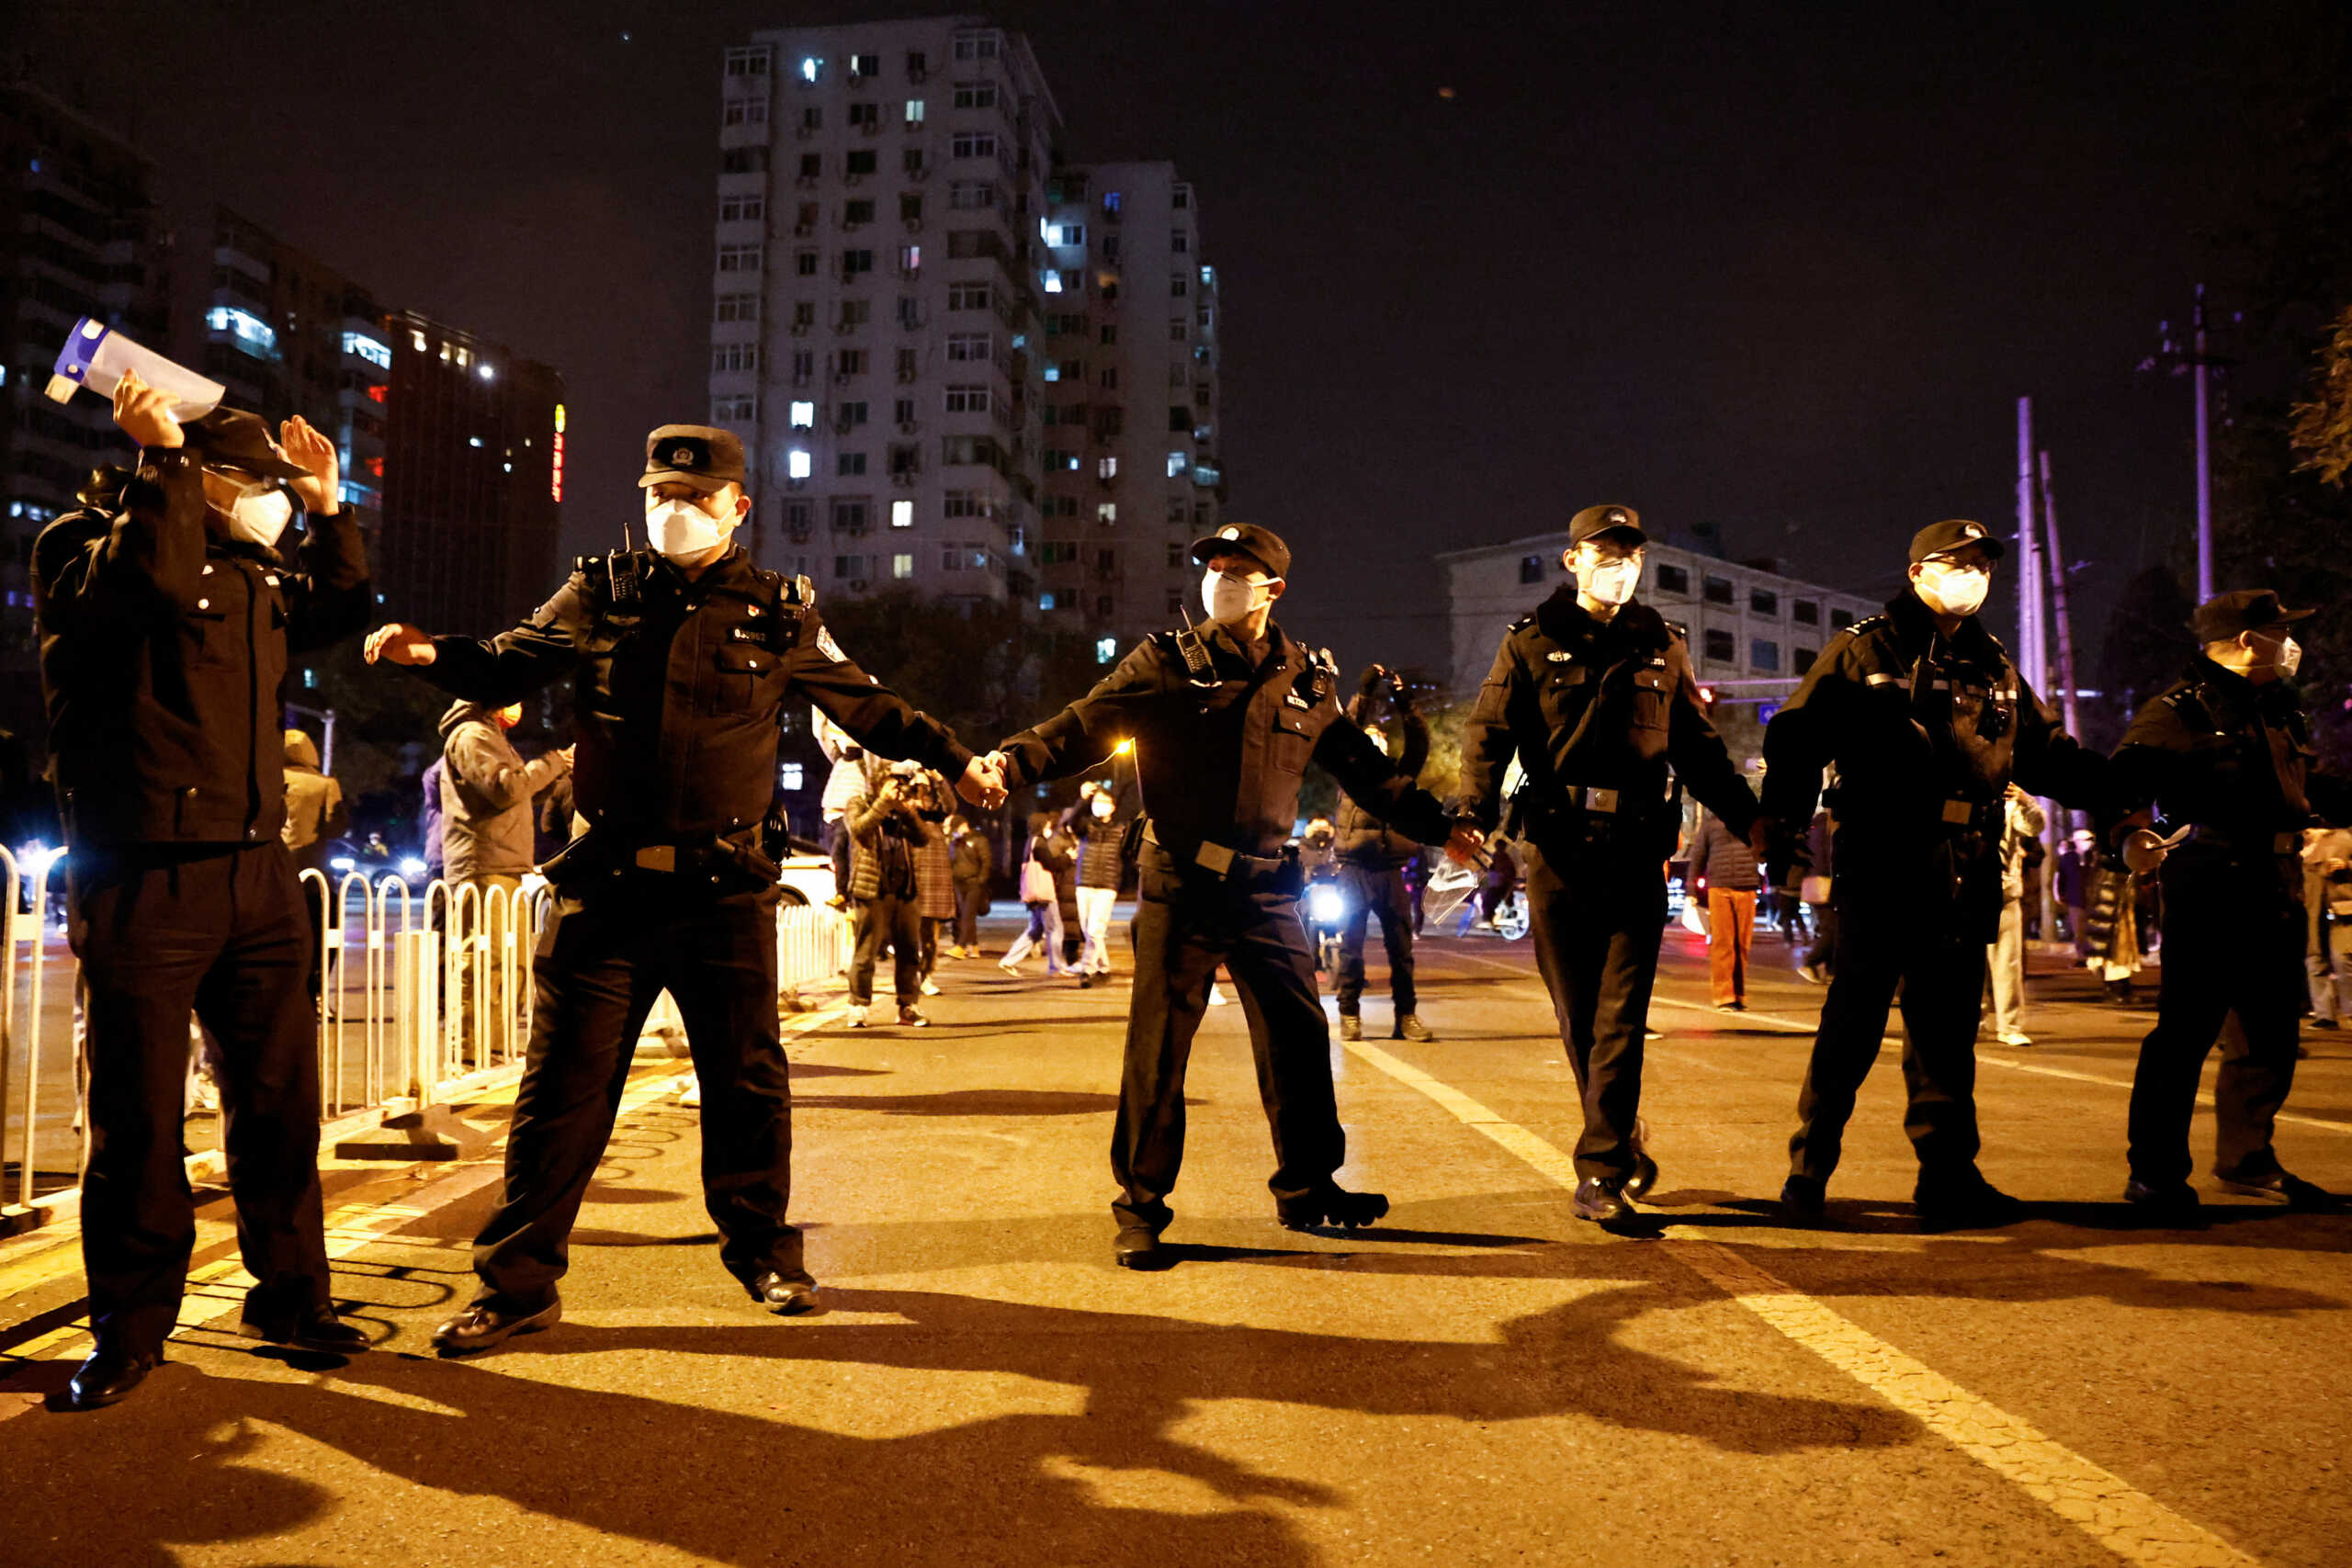 Κίνα: Γεμάτη αστυνομία η χώρα μετά τις διαδηλώσεις – Σταματούν περαστικούς και ελέγχουν τα κινητά για ύποπτο περιεχόμενο